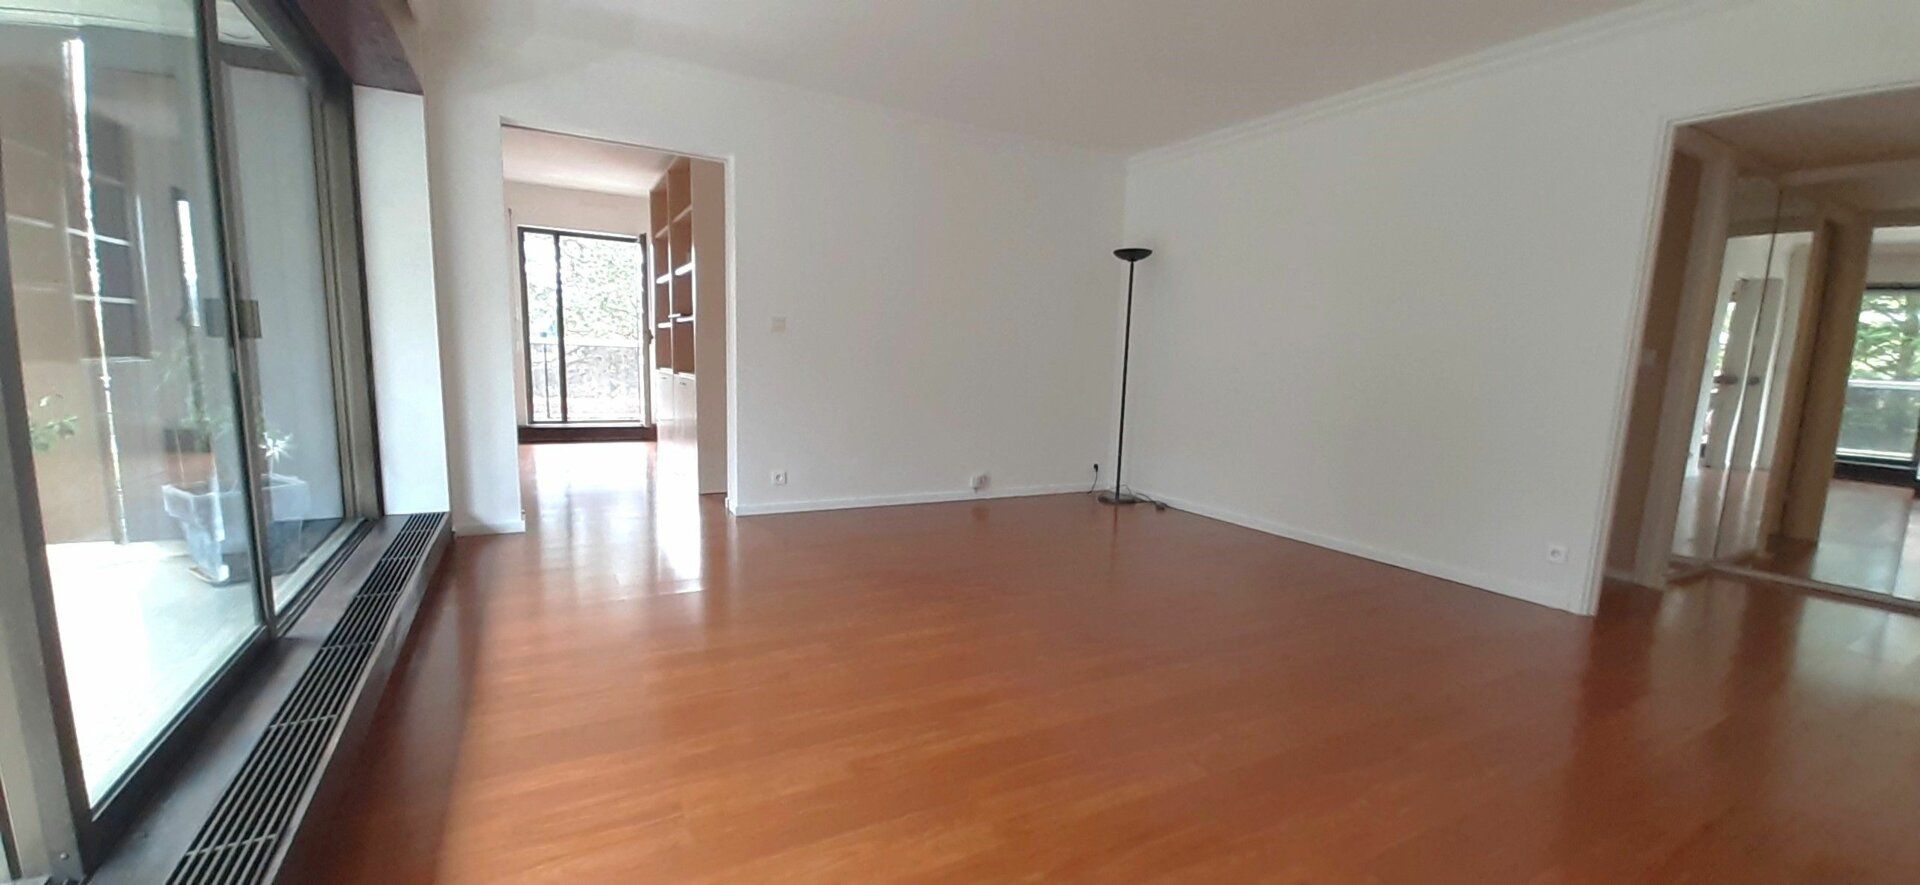 Appartement à vendre 4 96m2 à Rocquencourt vignette-2